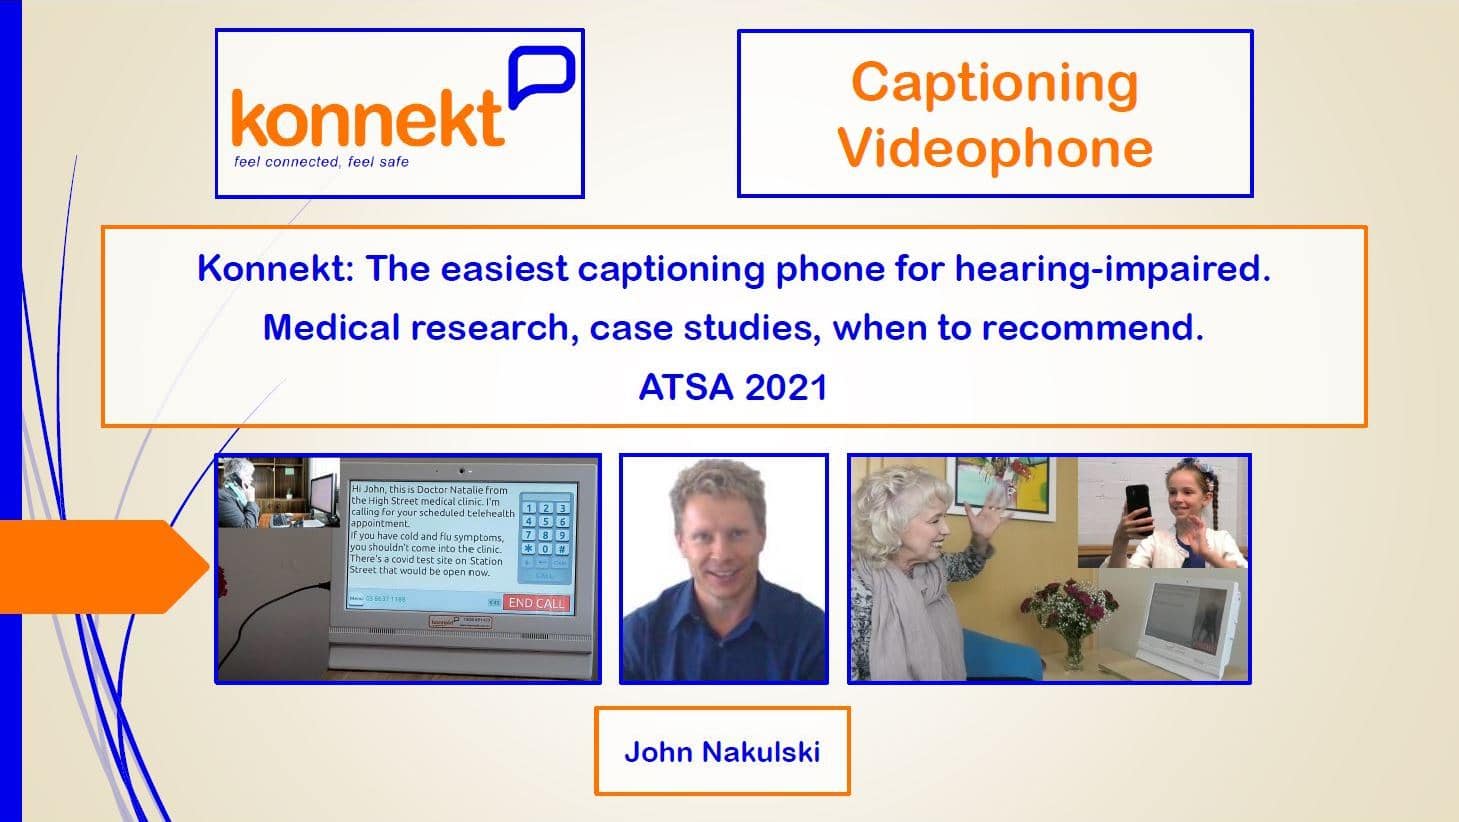 ATSA 2021 Seminar Presentation by Konnekt